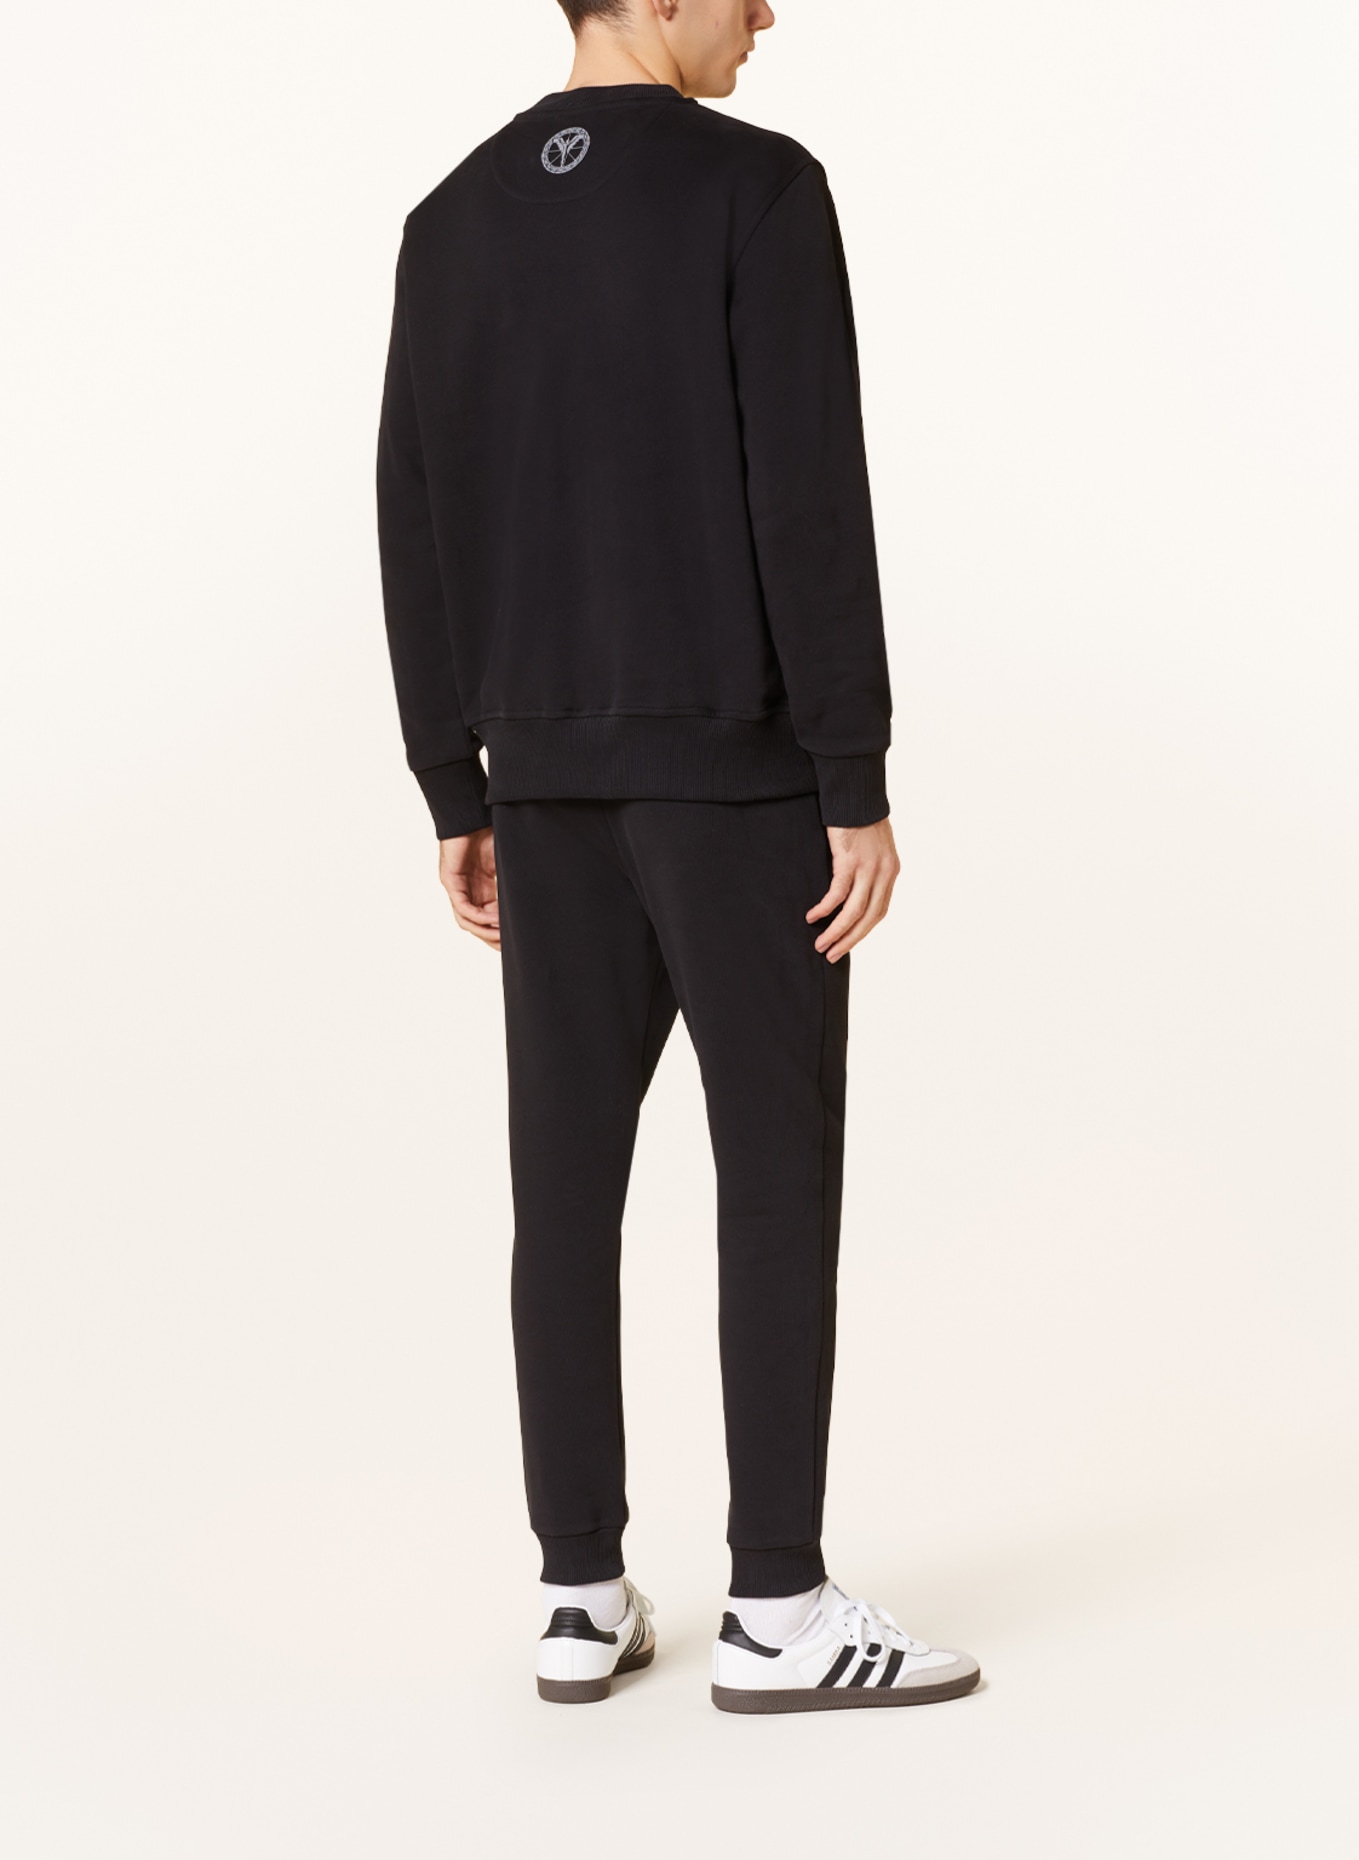 CARLO COLUCCI Sweatpants, Color: BLACK (Image 3)